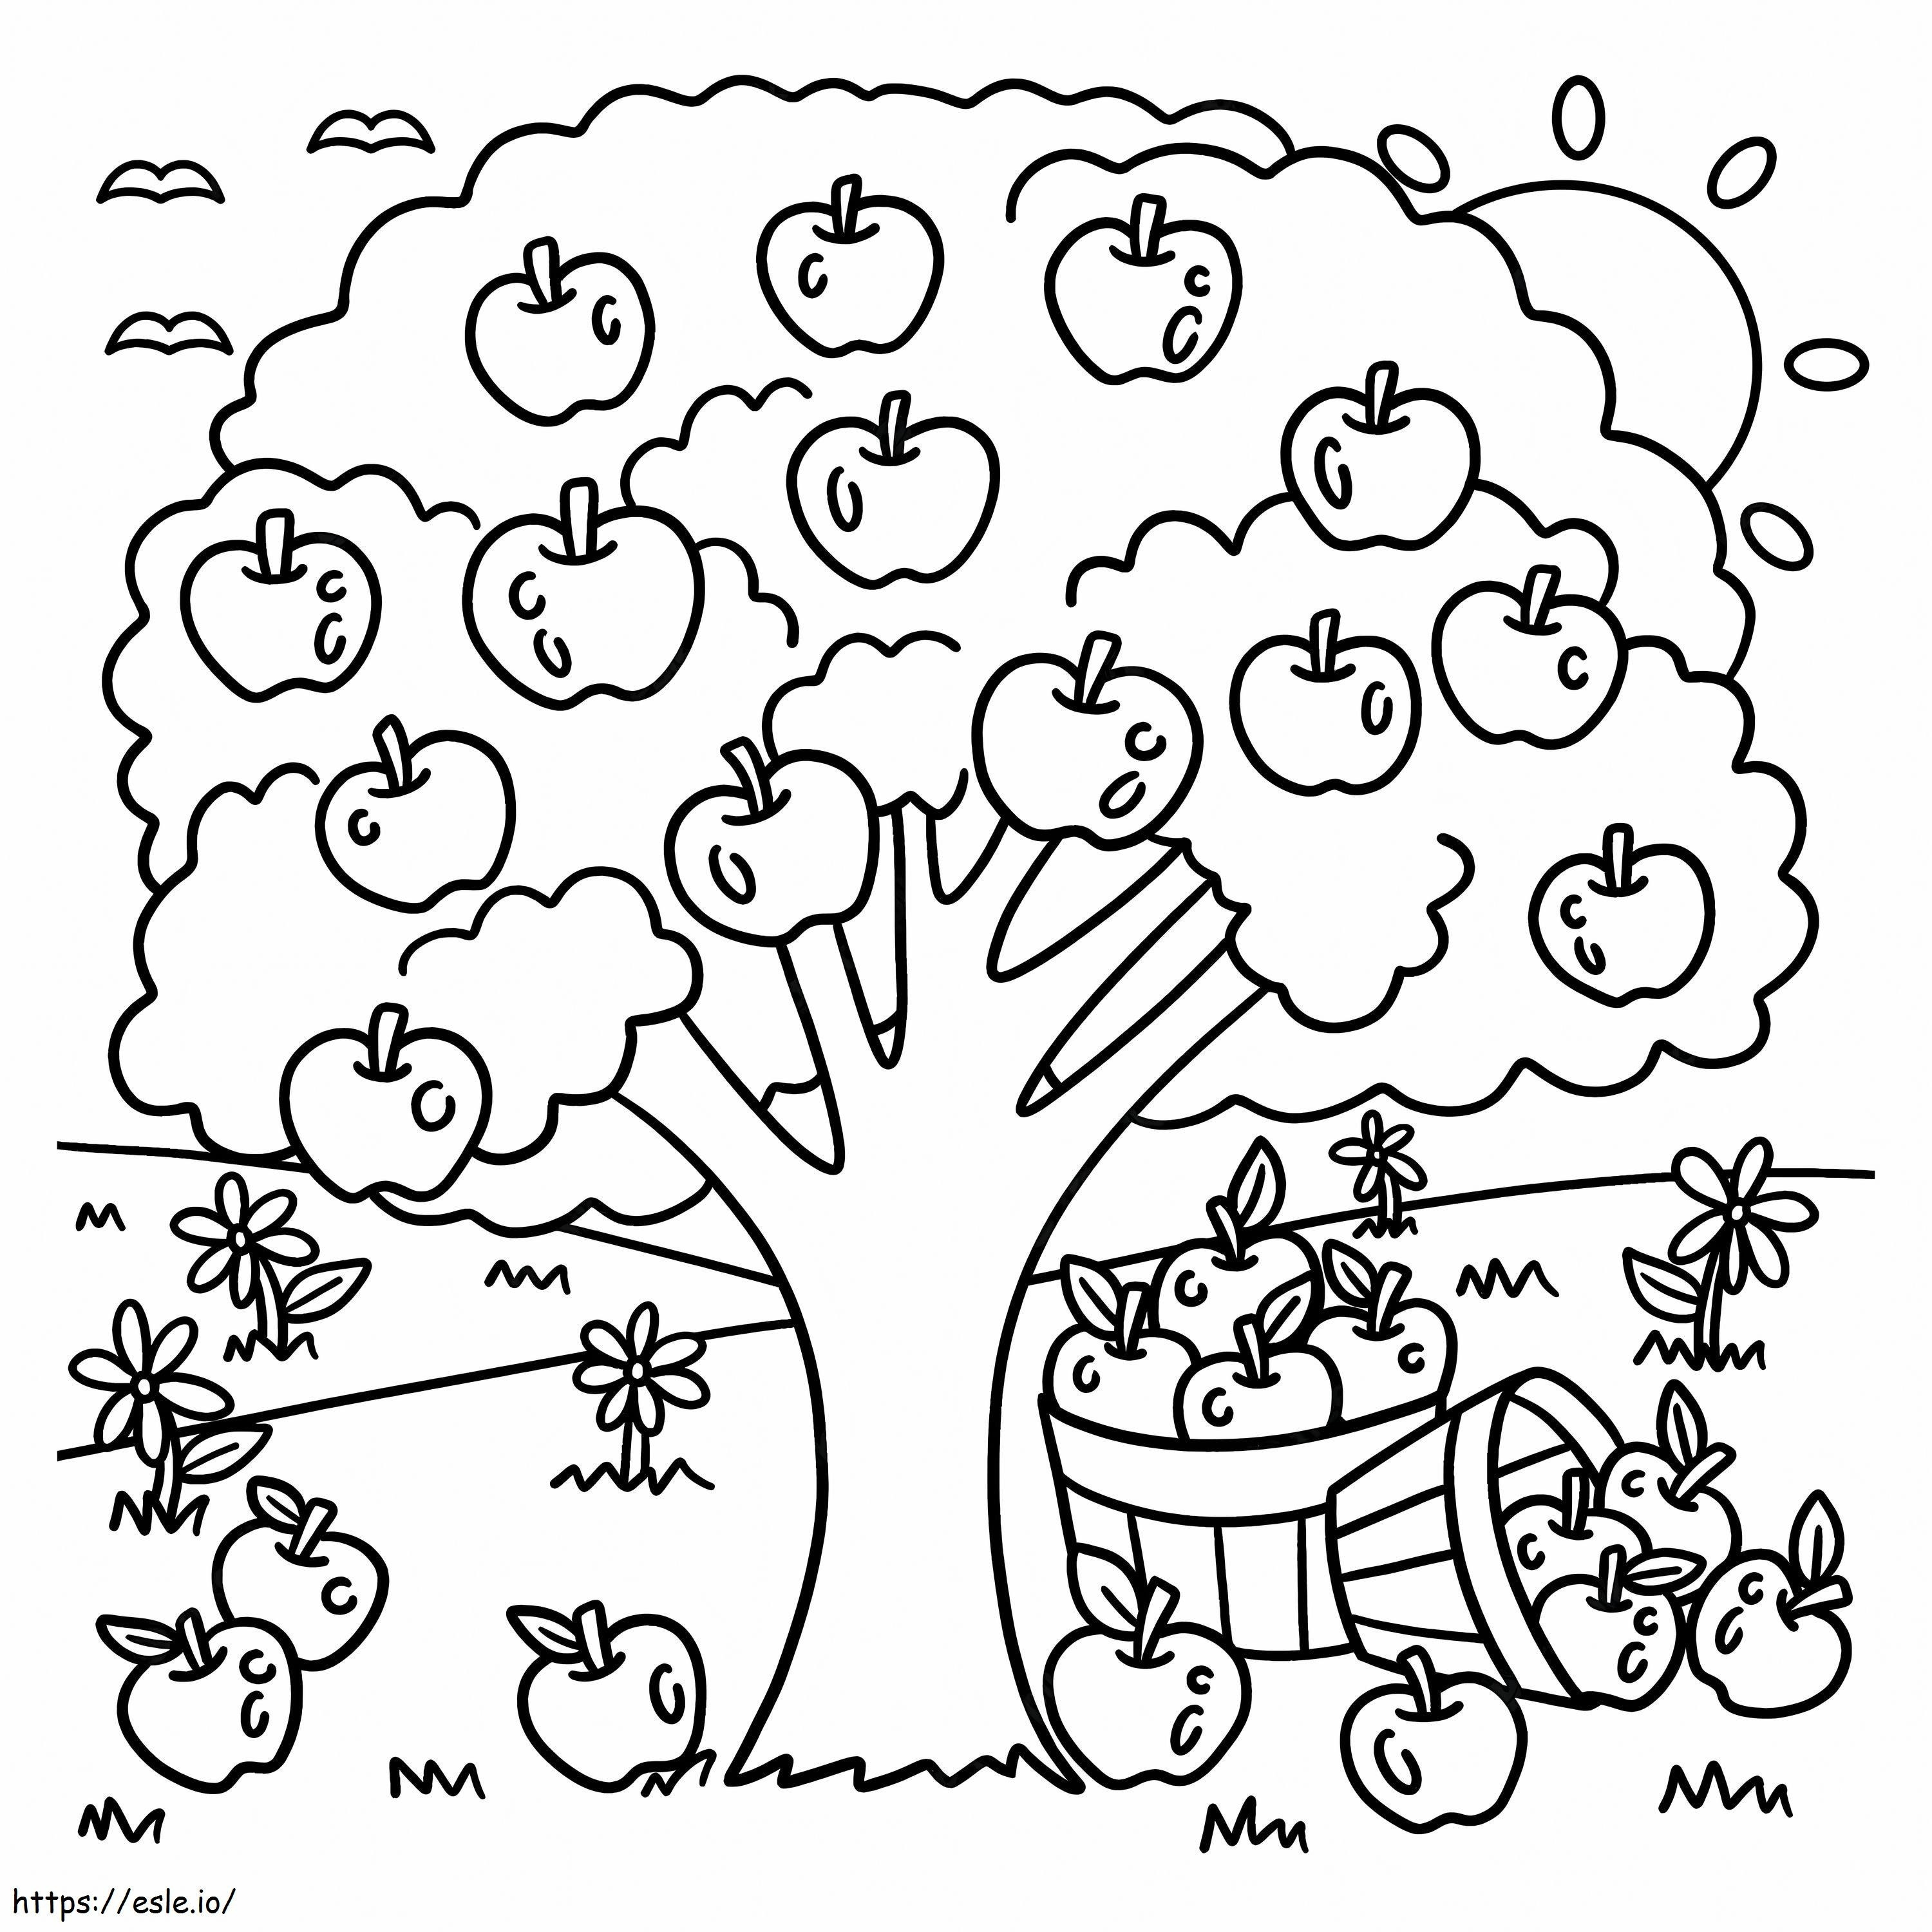 Elma ağacı boyama